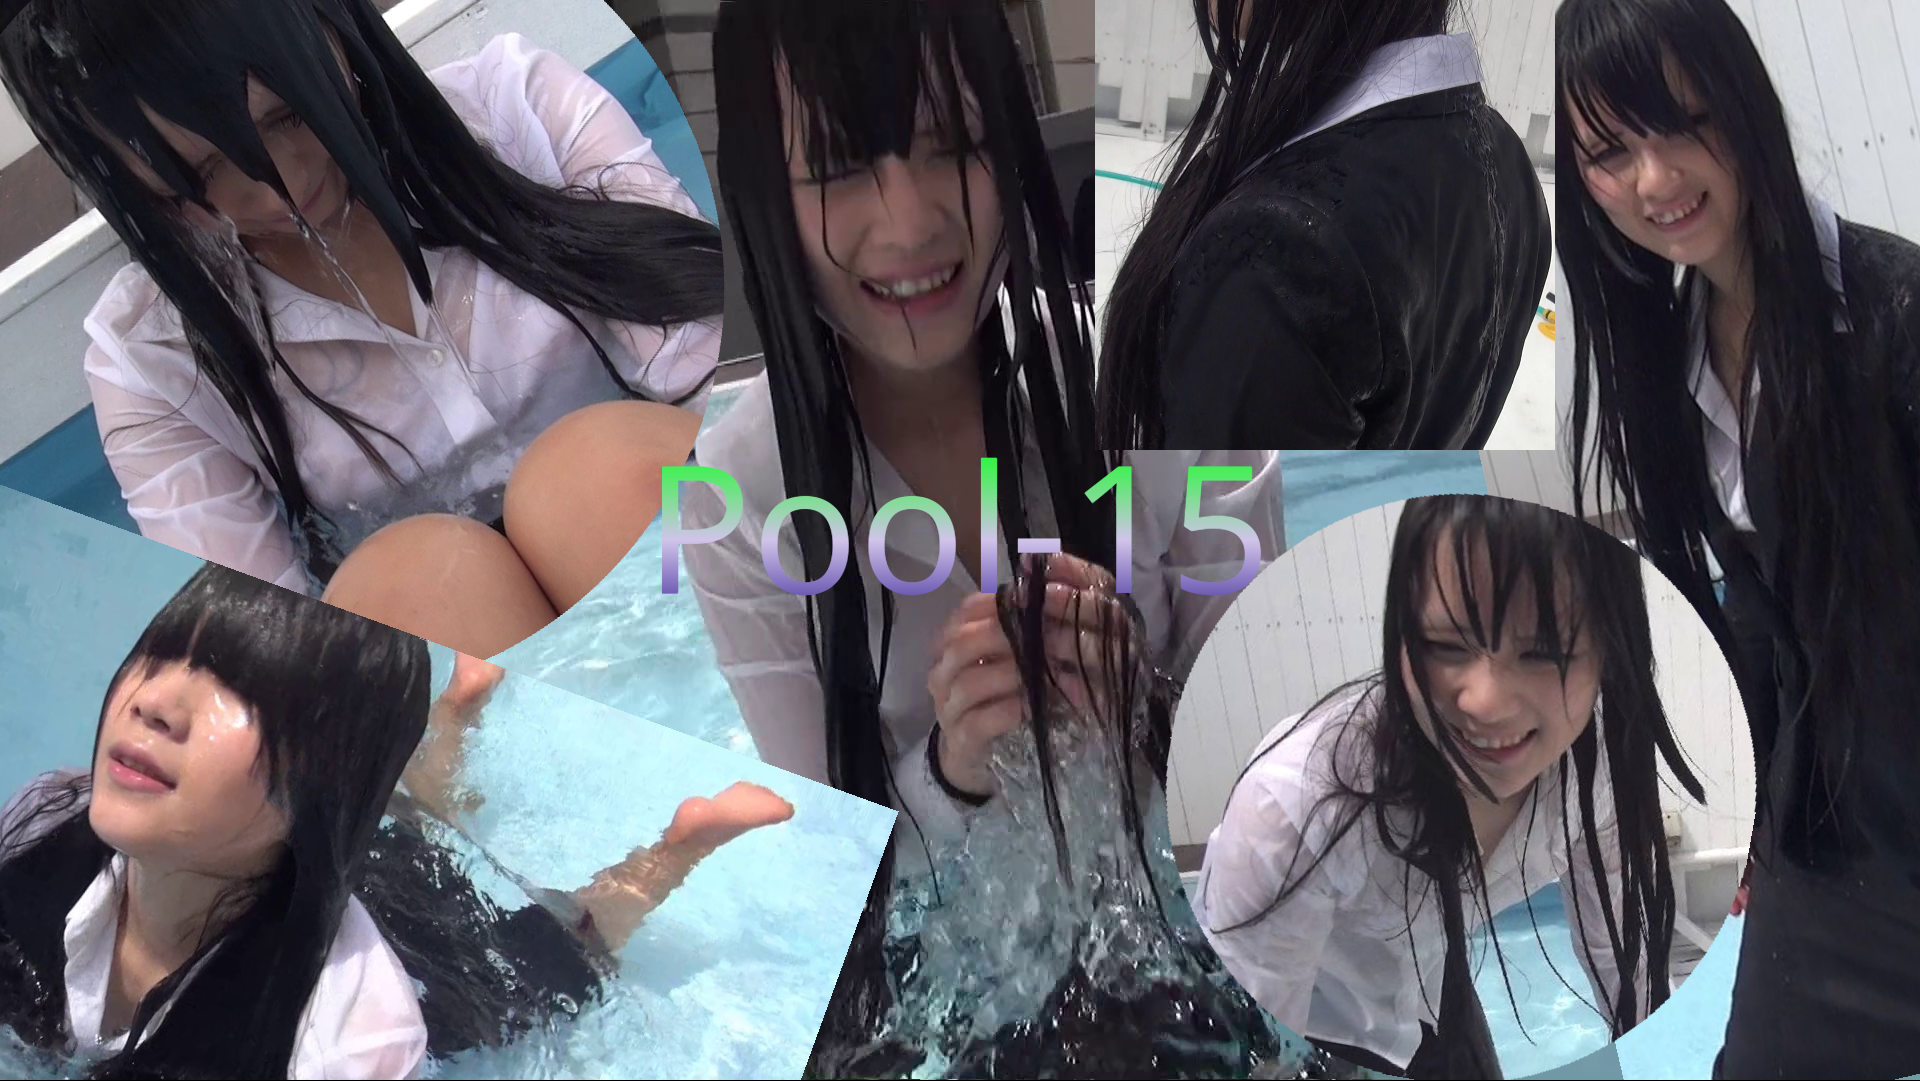 【Wet】Pool-15